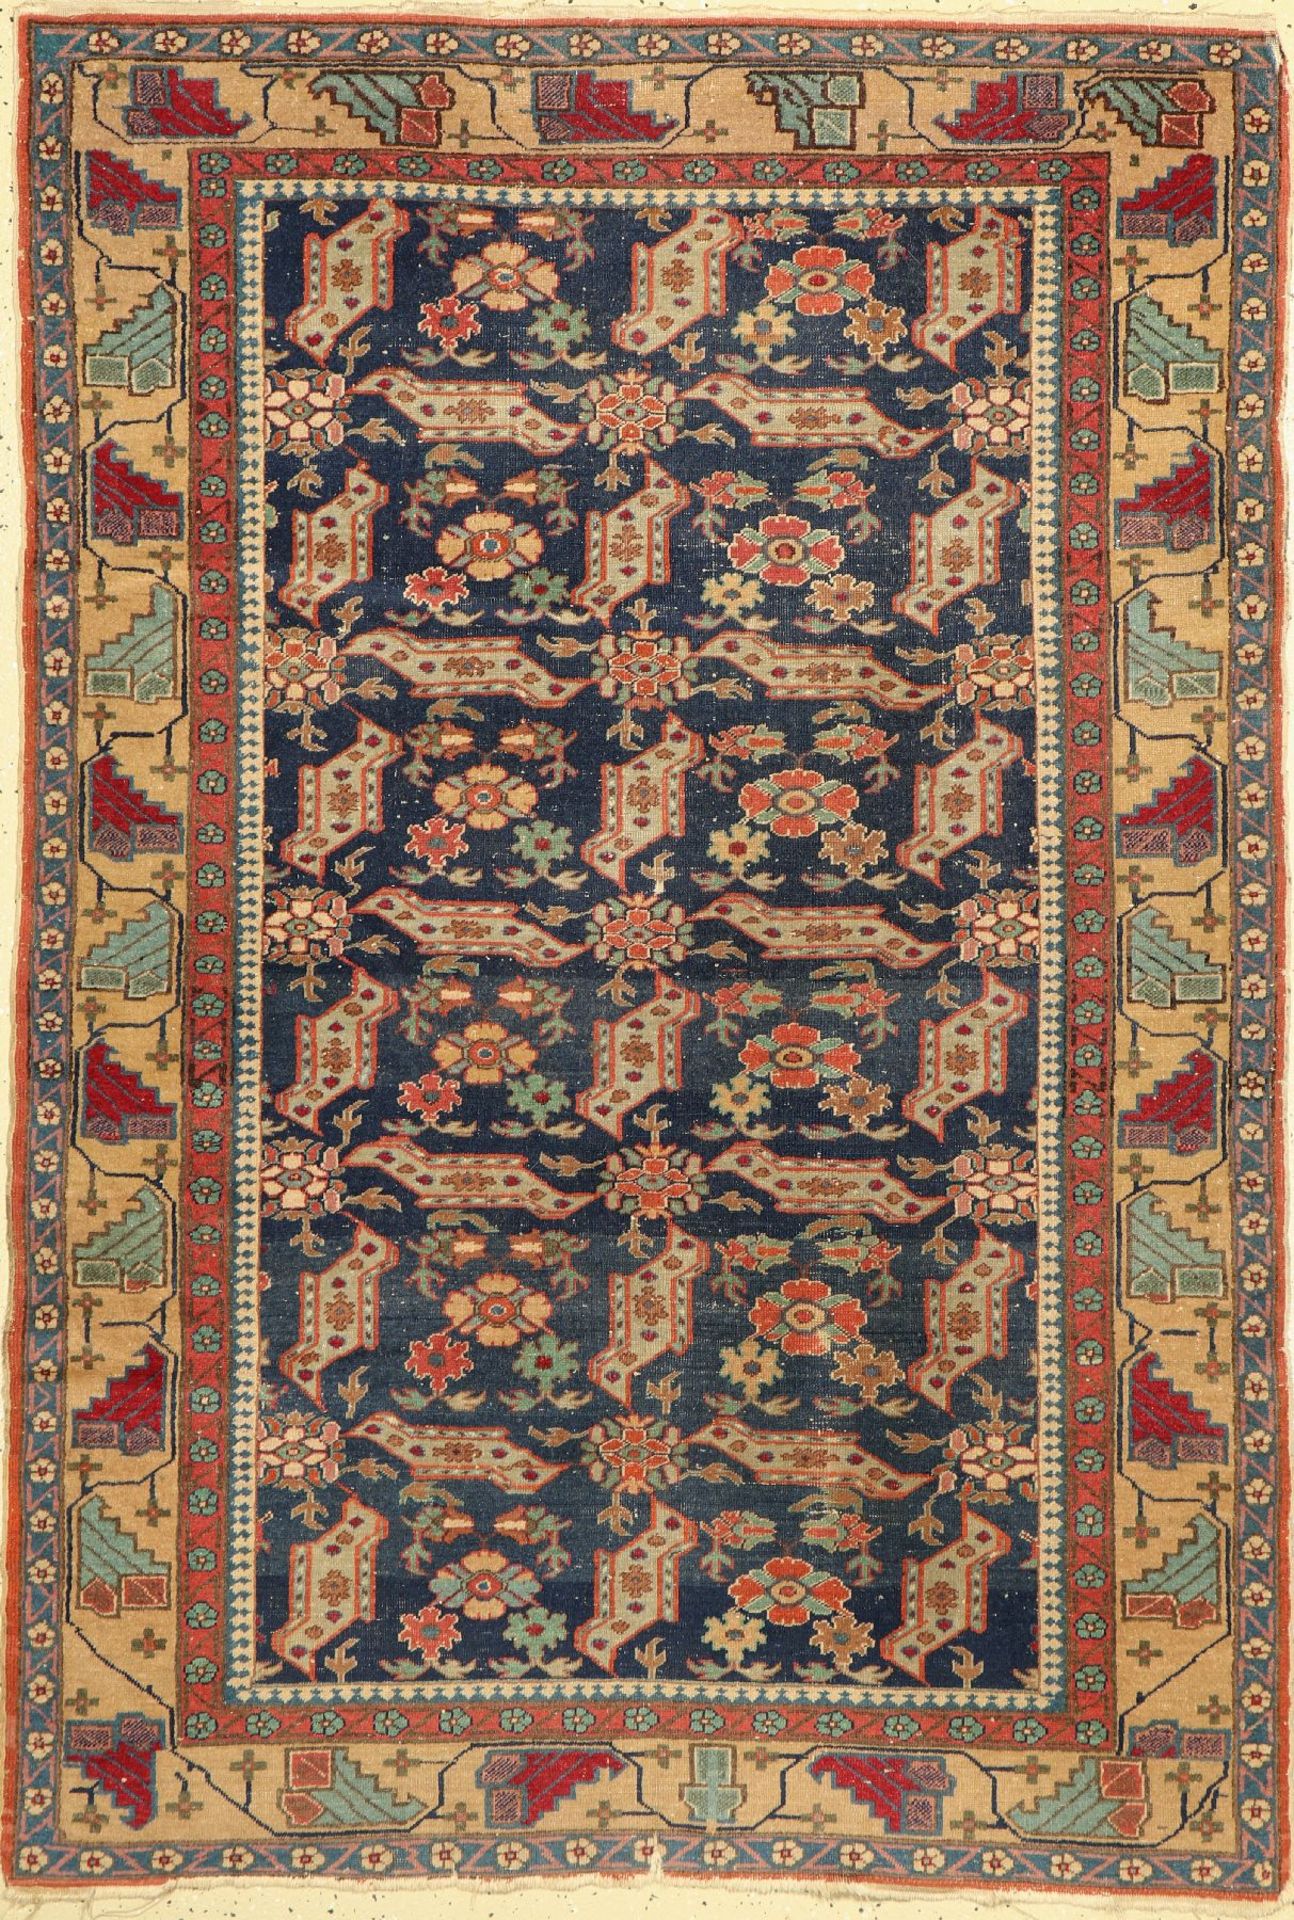 Panderma,   Türkei, um 1910, Wolle auf Baumwolle, ca. 170